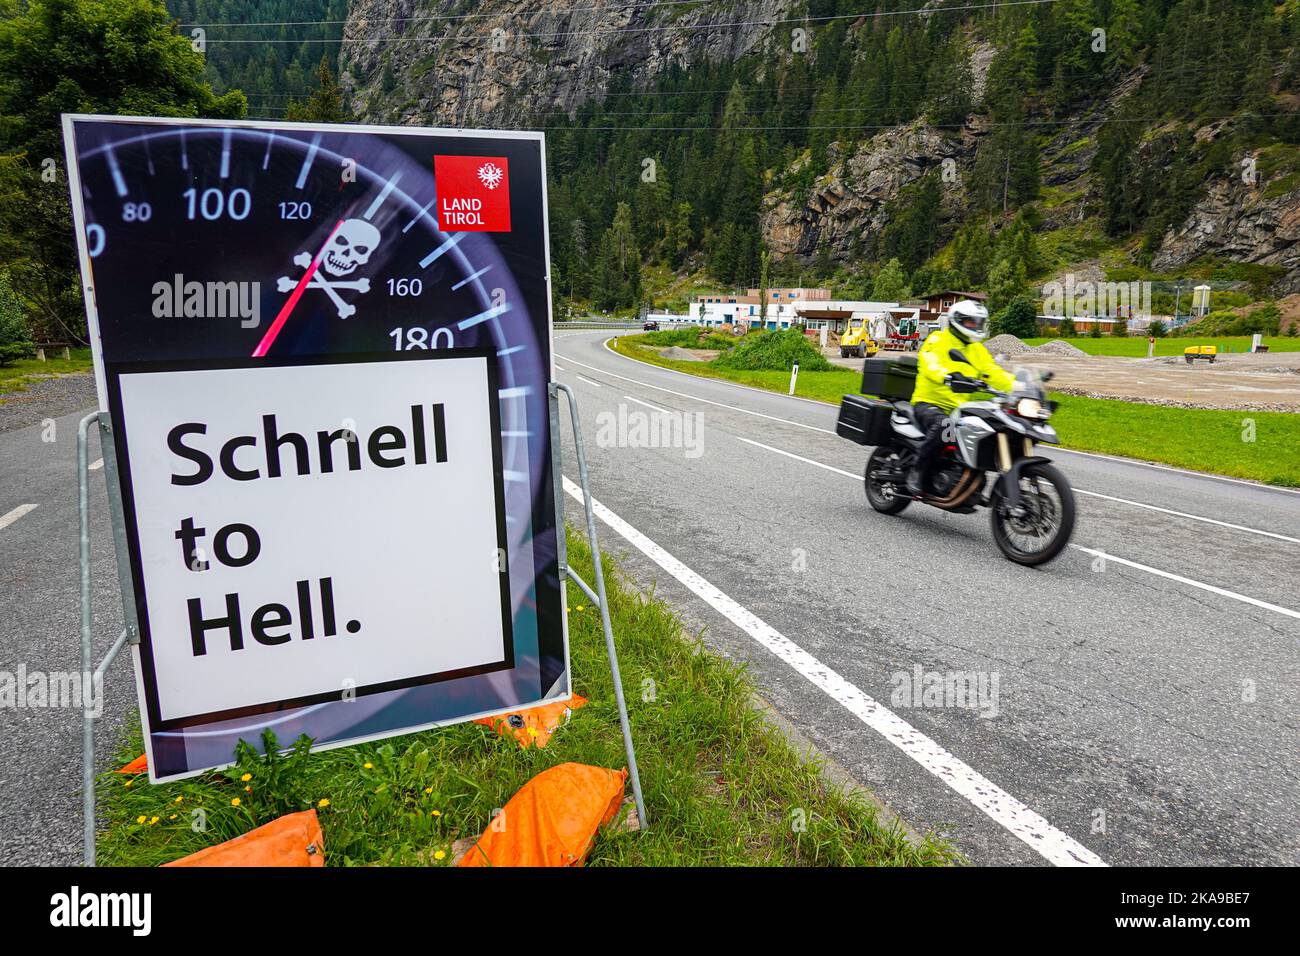 Schnell al infierno, señal de tráfico de velocidad otoño en el valle de Oetztal Austria, Tirol, Alpes, Foto de stock